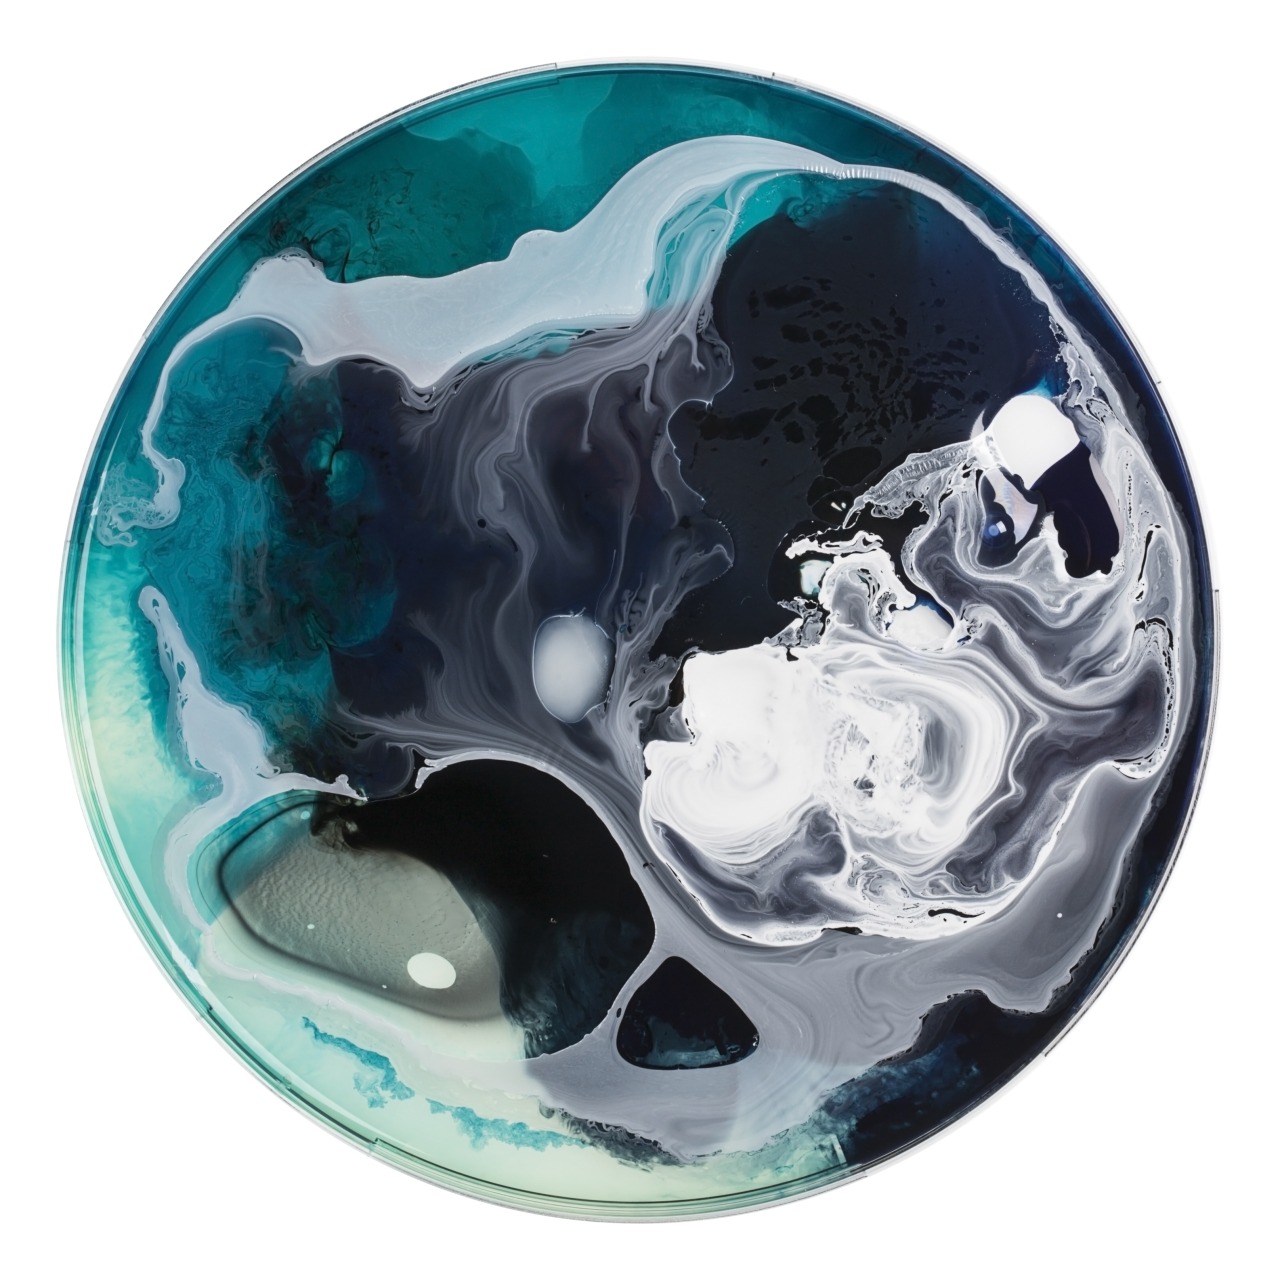 xaoss:  The Petri Dish Project 2014, the Sci-Fi Series, by J.D Doria